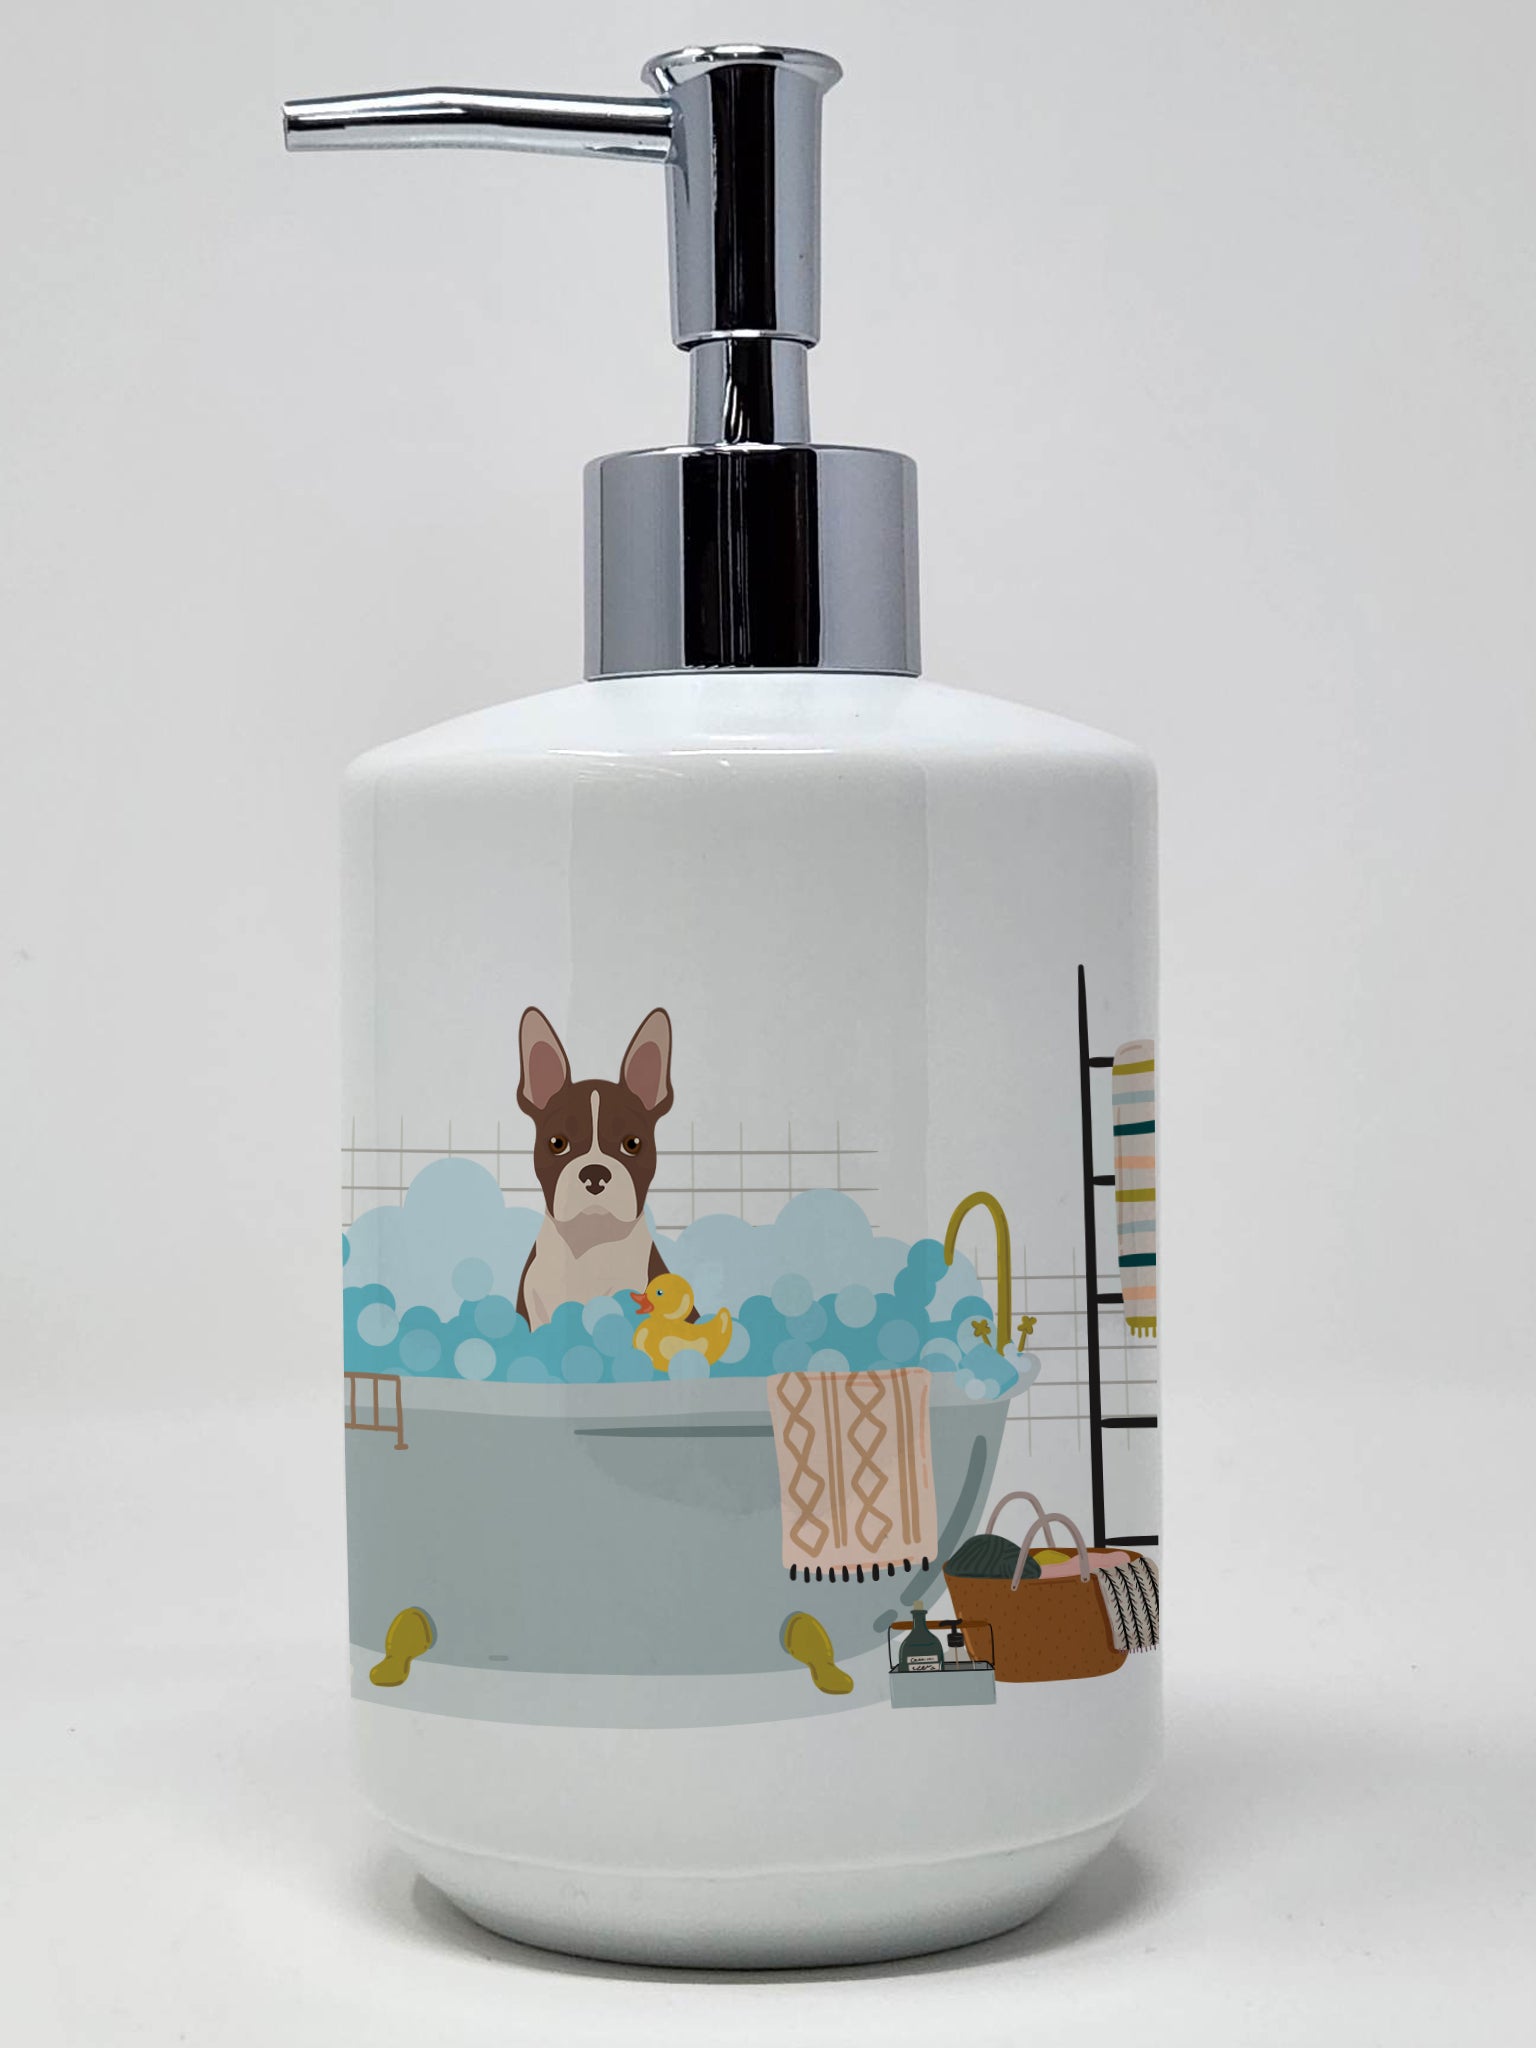 Buy this Red Boston Terrier Ceramic Soap Dispenser